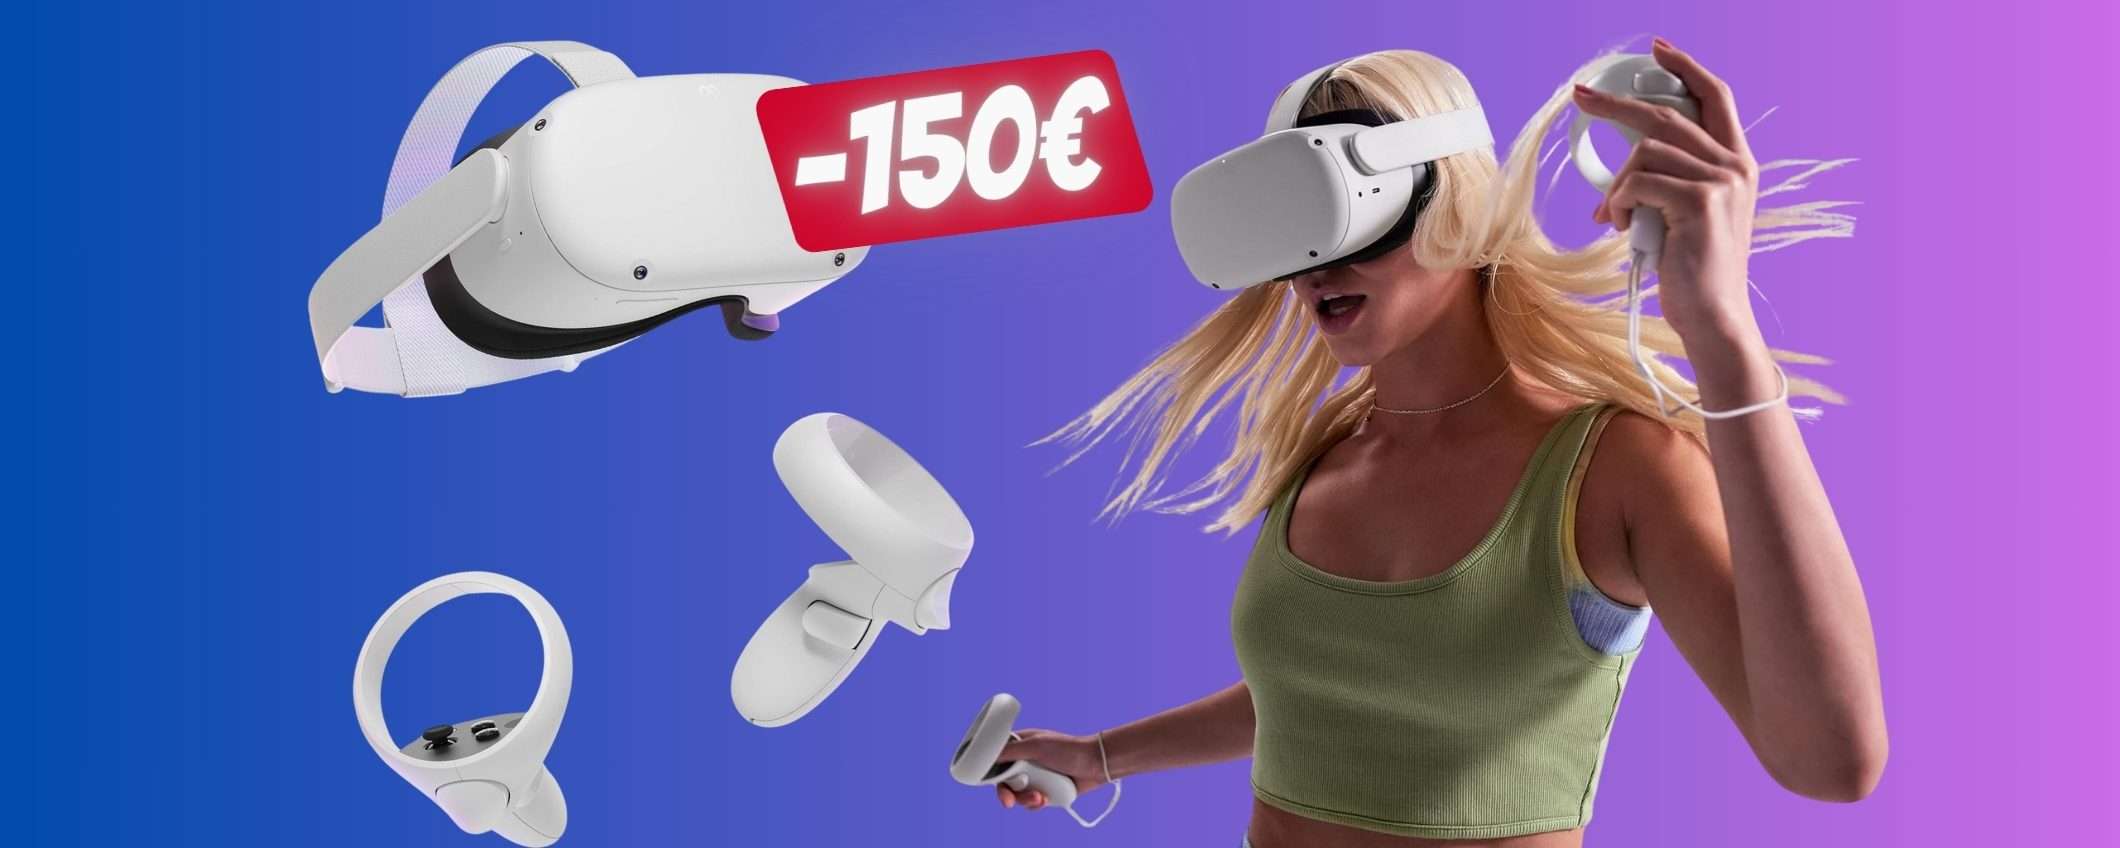 Meta Quest 2 per la realtà virtuale senza limiti in SCONTO di 150€